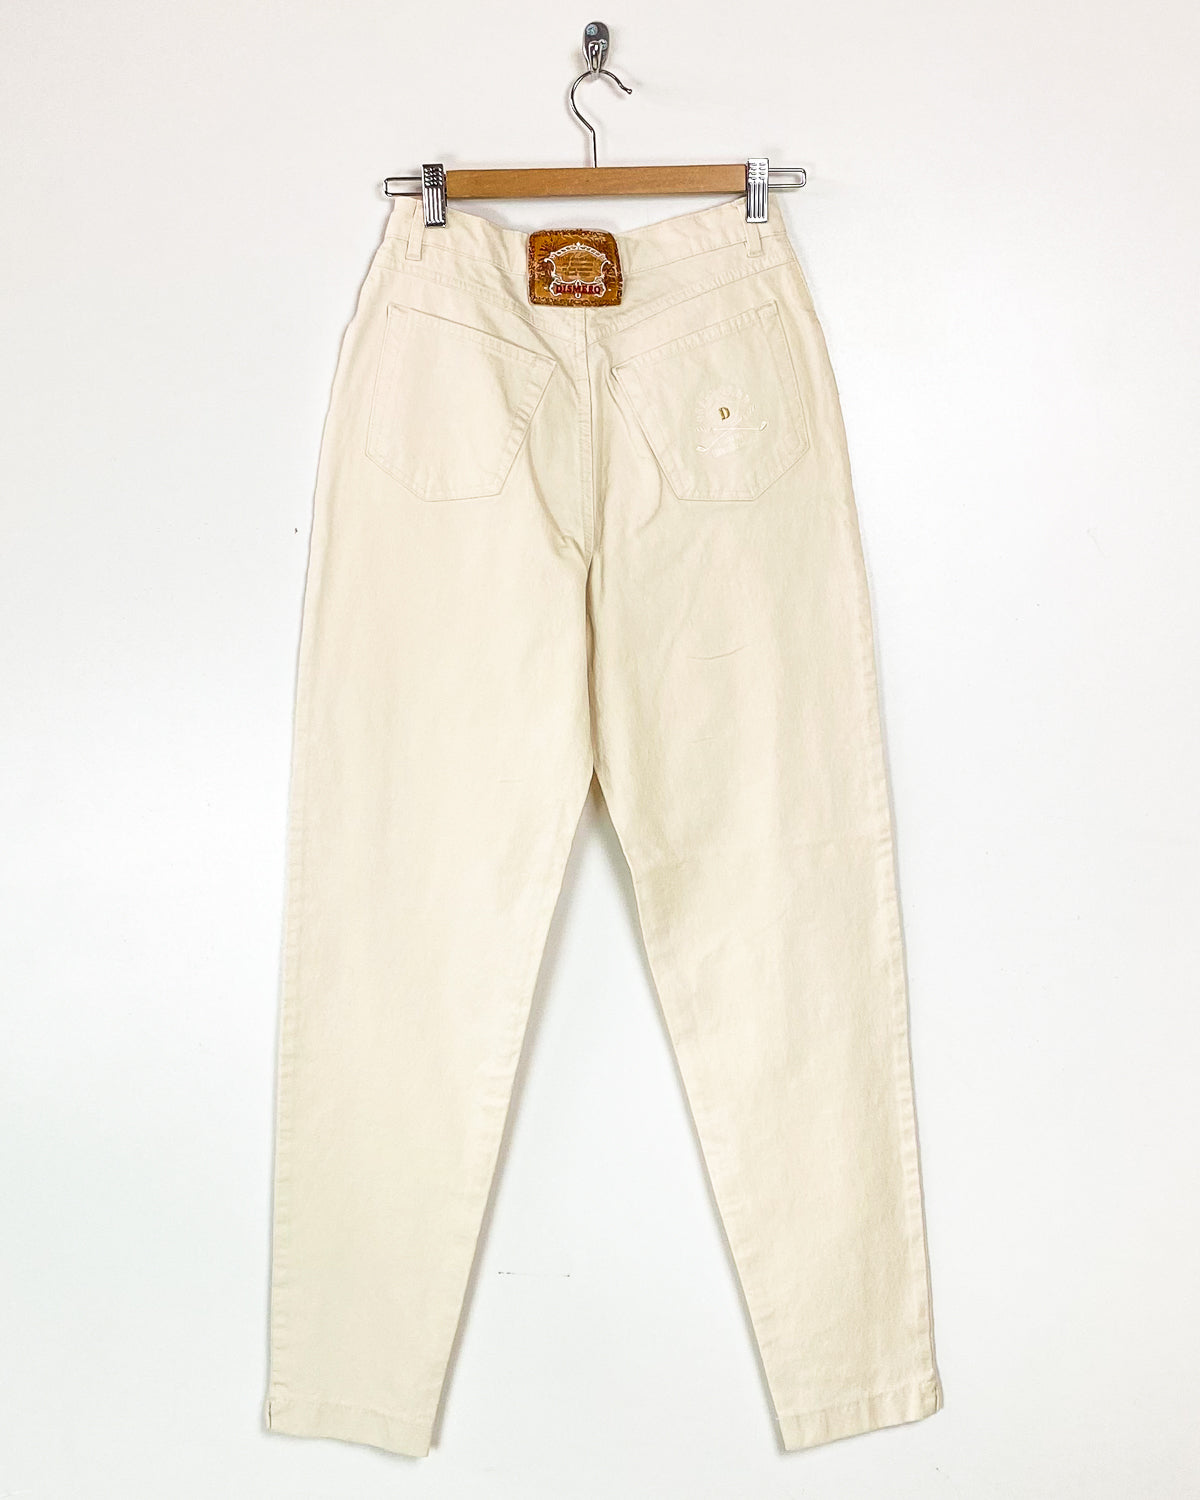 Jeans Vintage Taglia 44